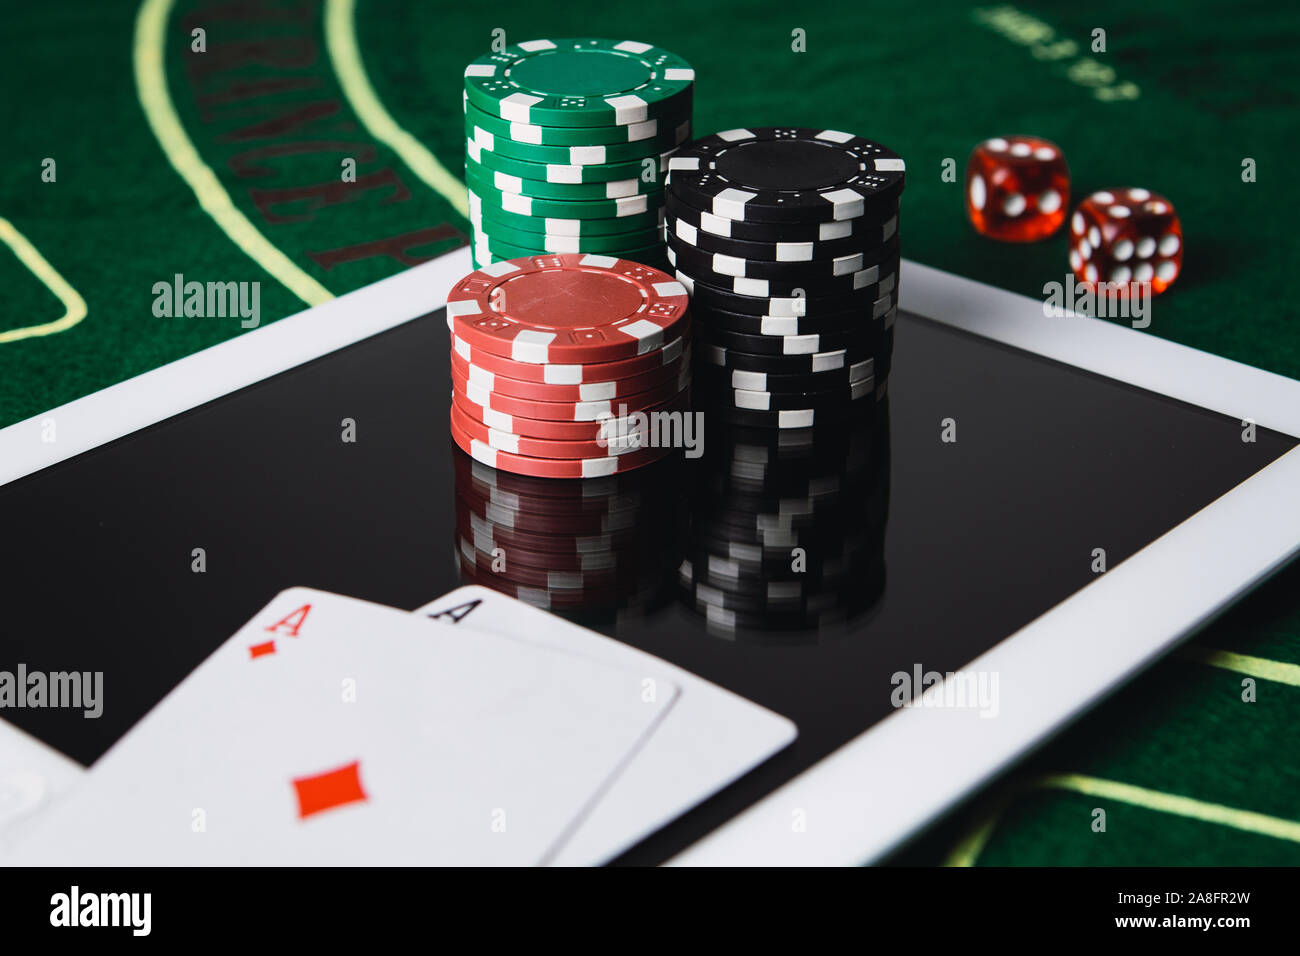 Online poker -Fotos und -Bildmaterial in hoher Auflösung – Alamy